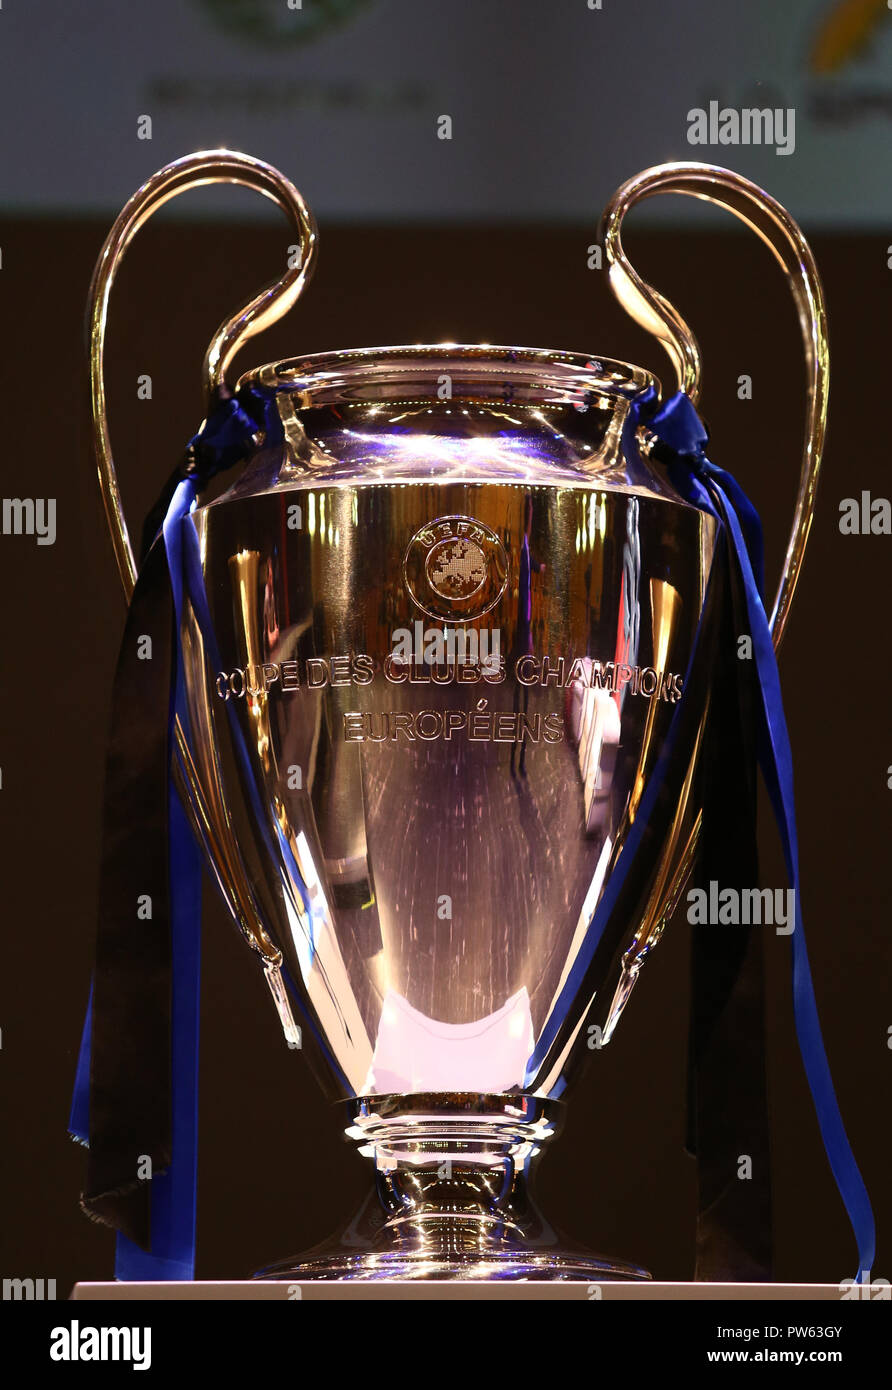 uefa champions league trophy tour 2018